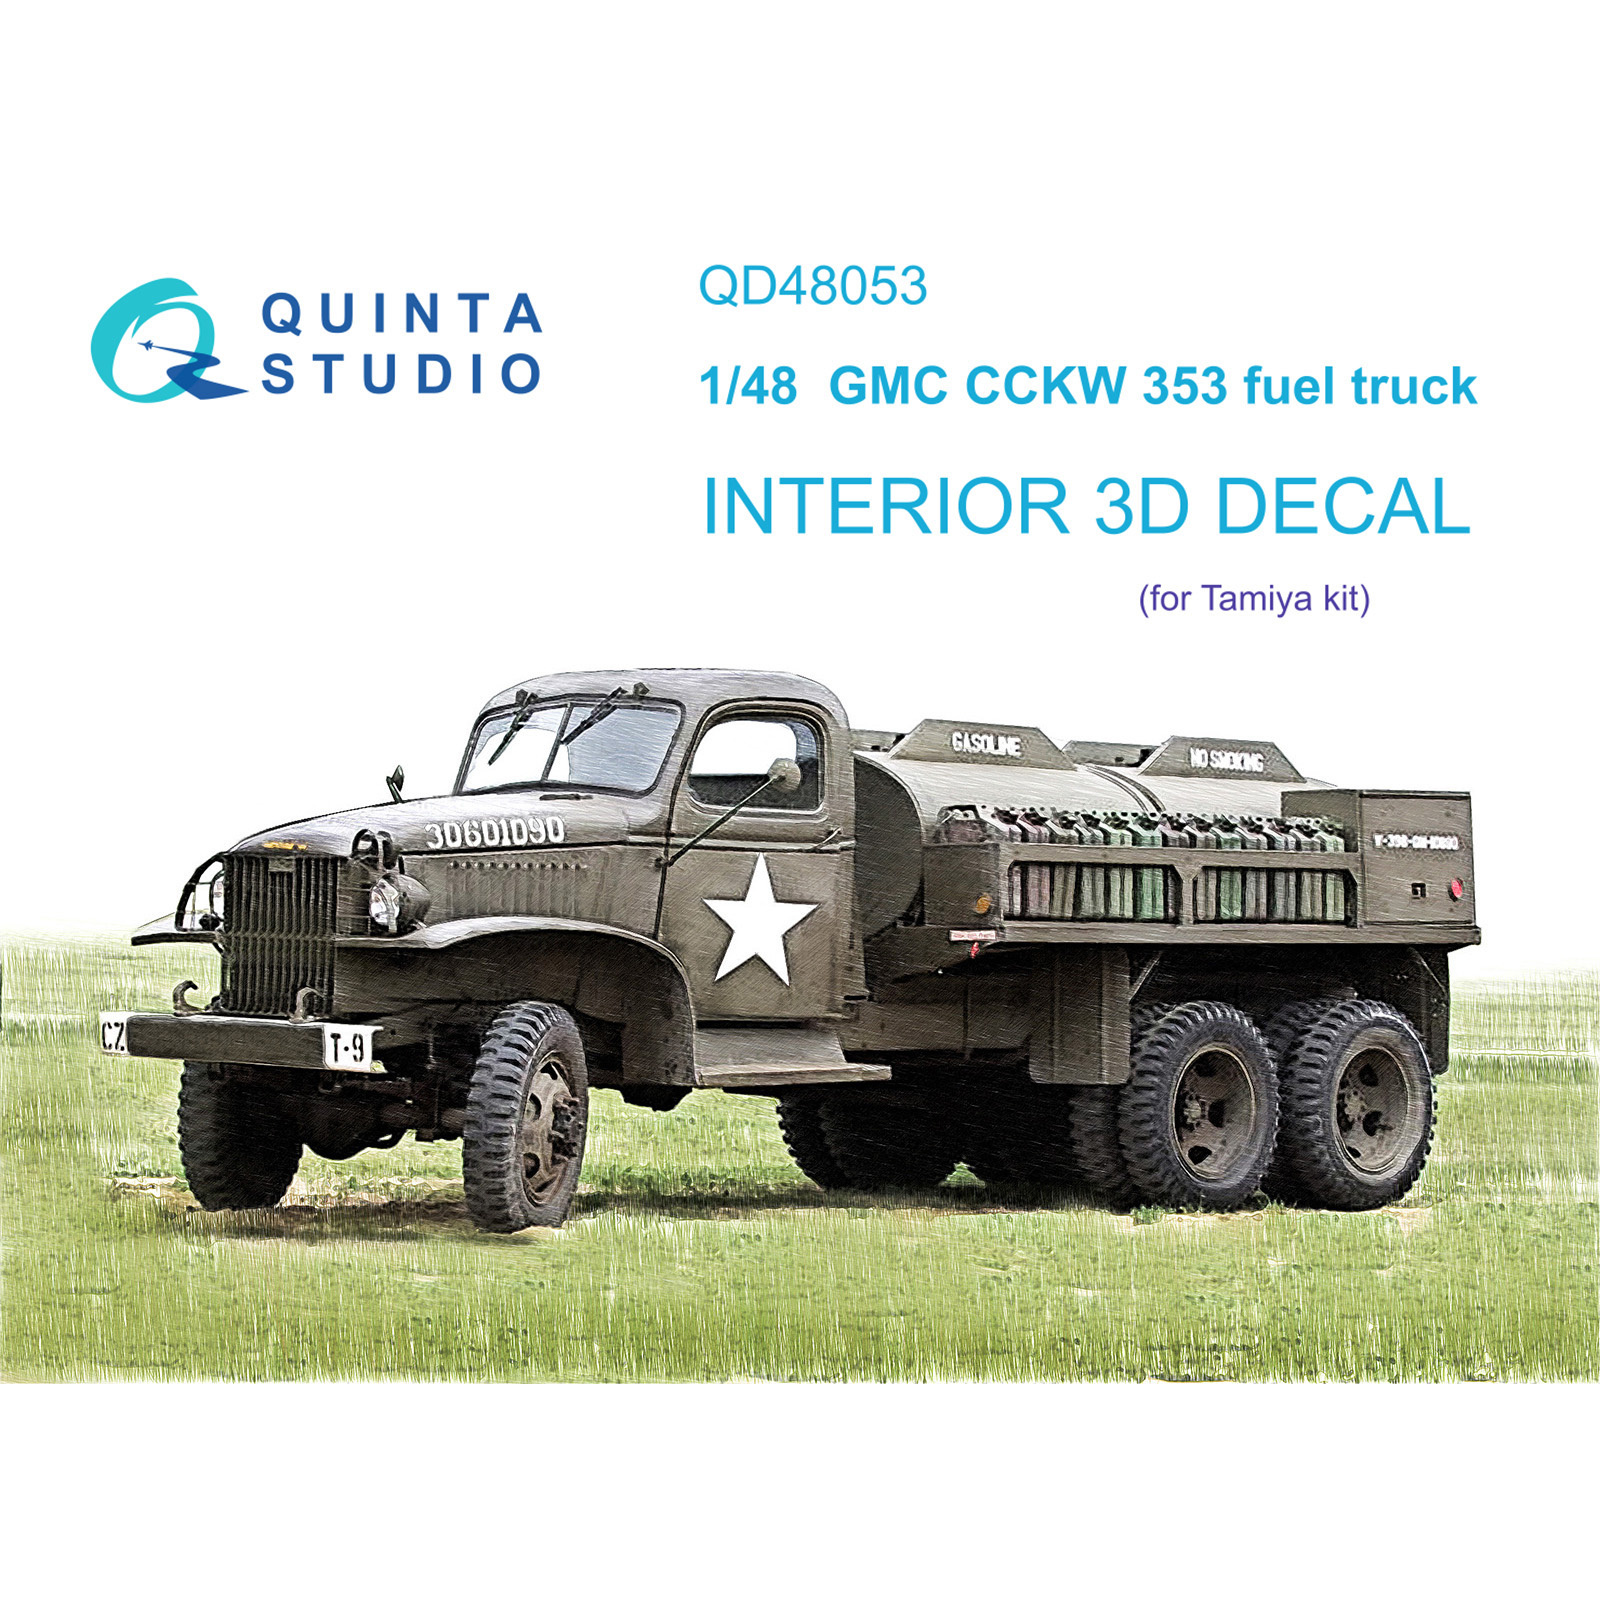 QD48053 Quinta Studio 1/48 3D Interior Decal GMC CCKW 353 fuel truck (Tamiya)